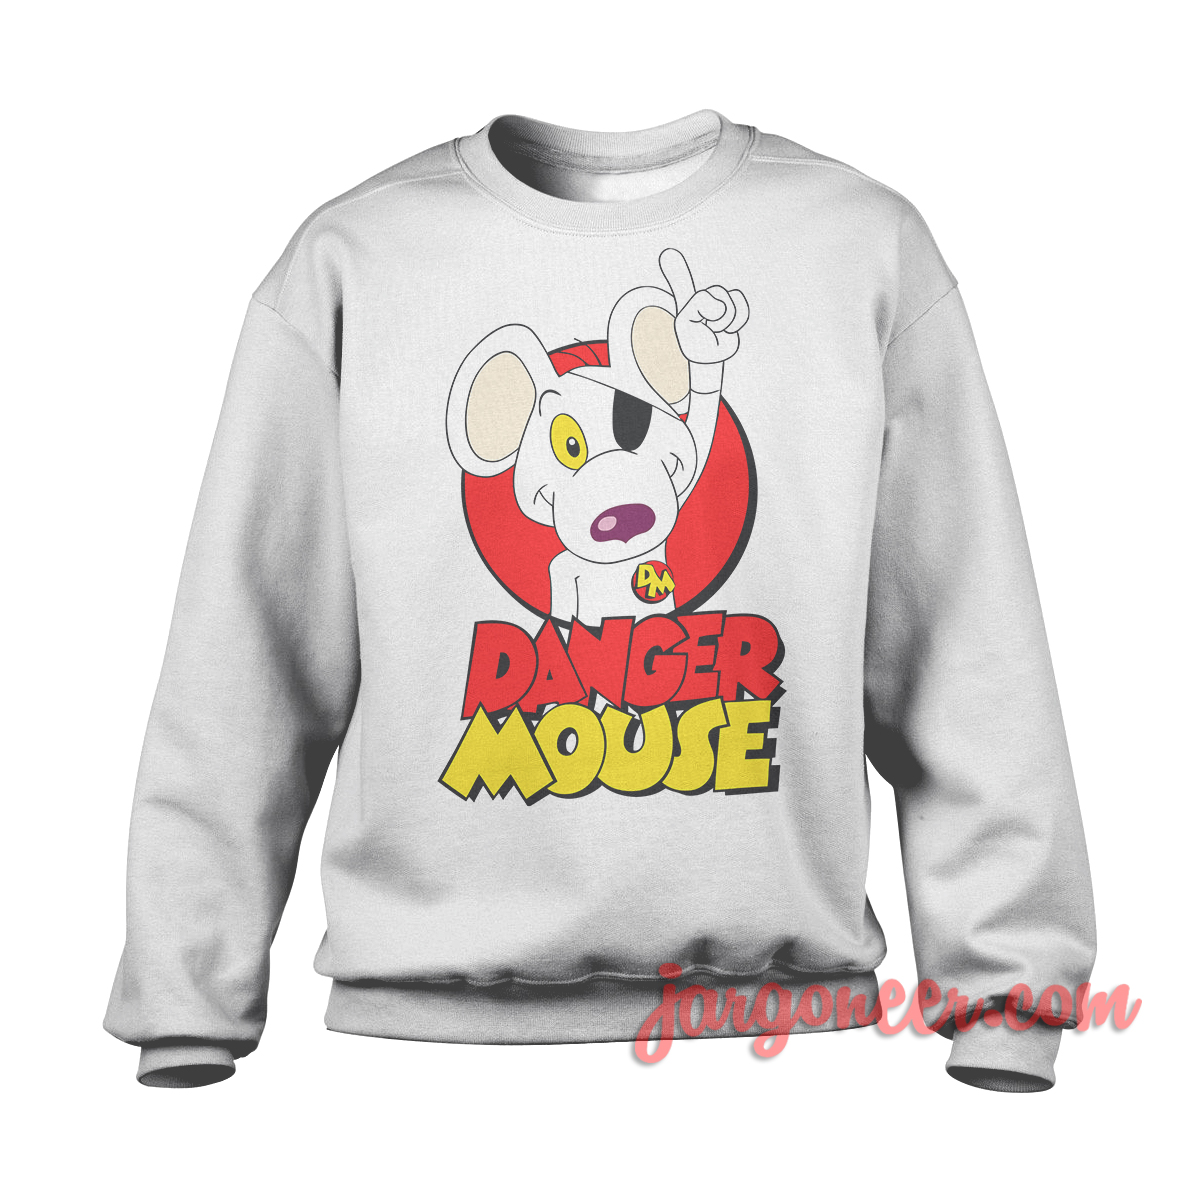 Danger Mouse White SS - Shop Unique Graphic Cool Shirt Designs